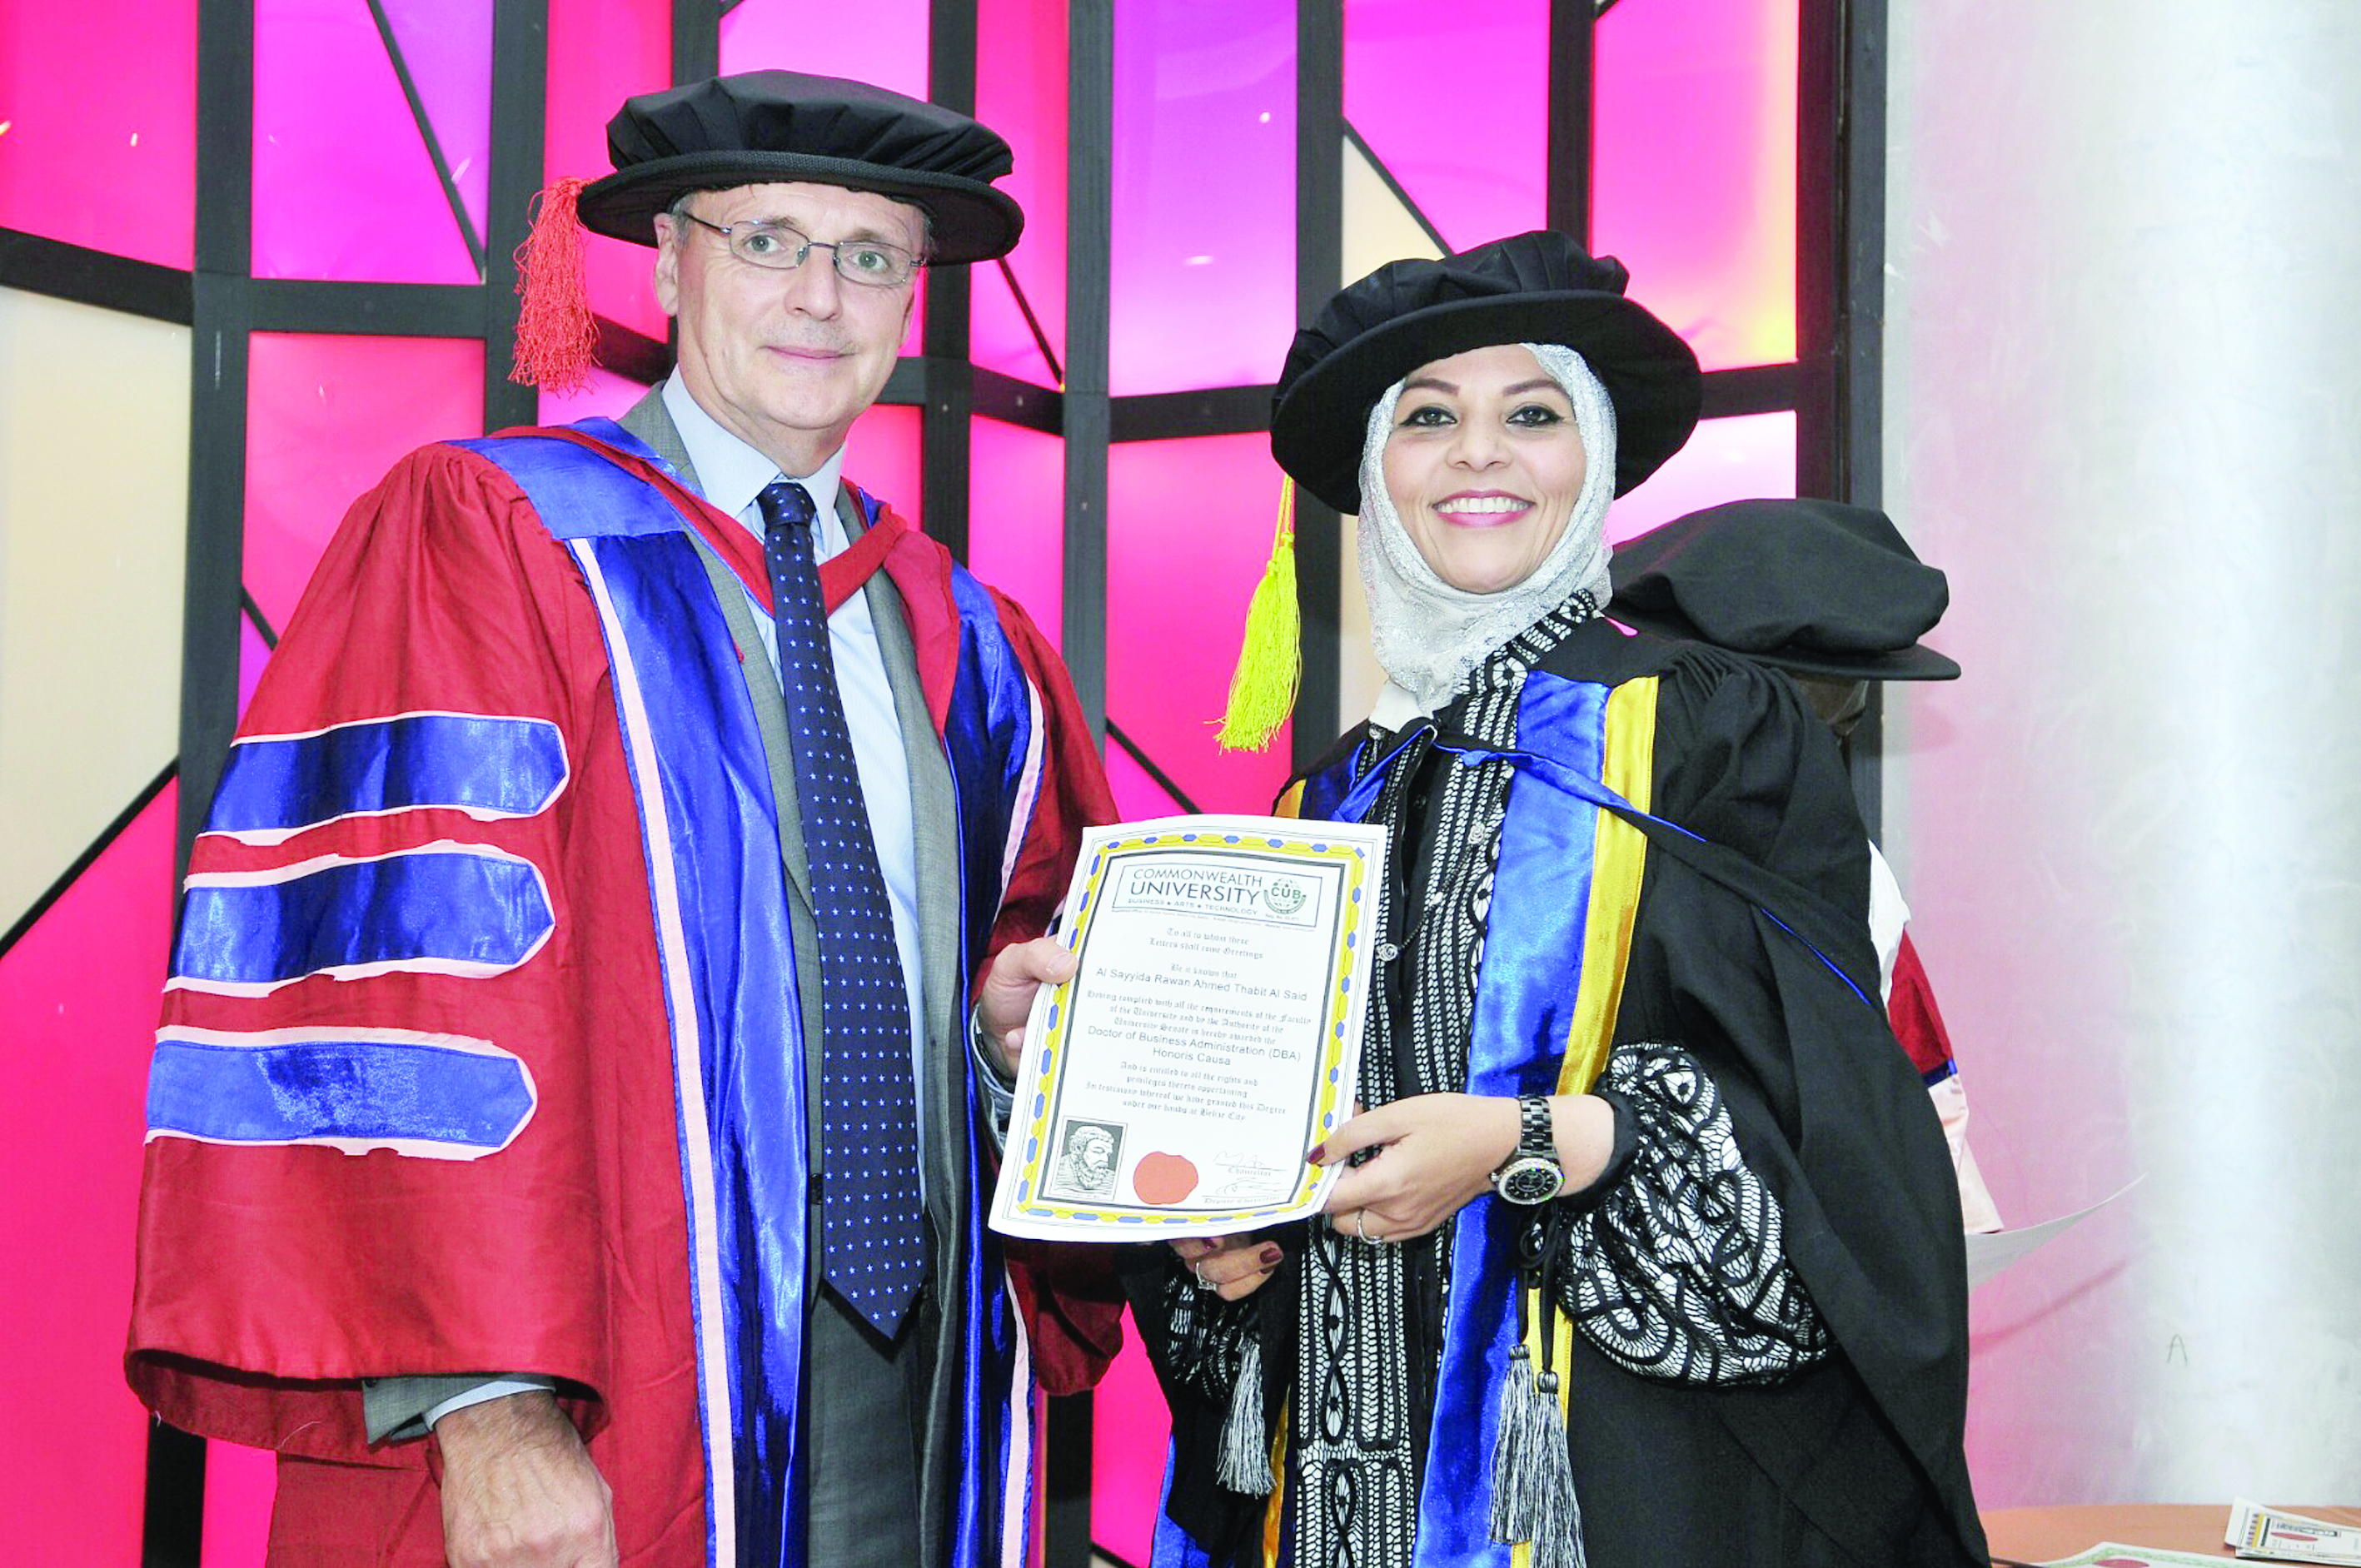 دكتوراه فخرية للسيدة روان بنت أحمد آل سعيد من جامعة كومونولث